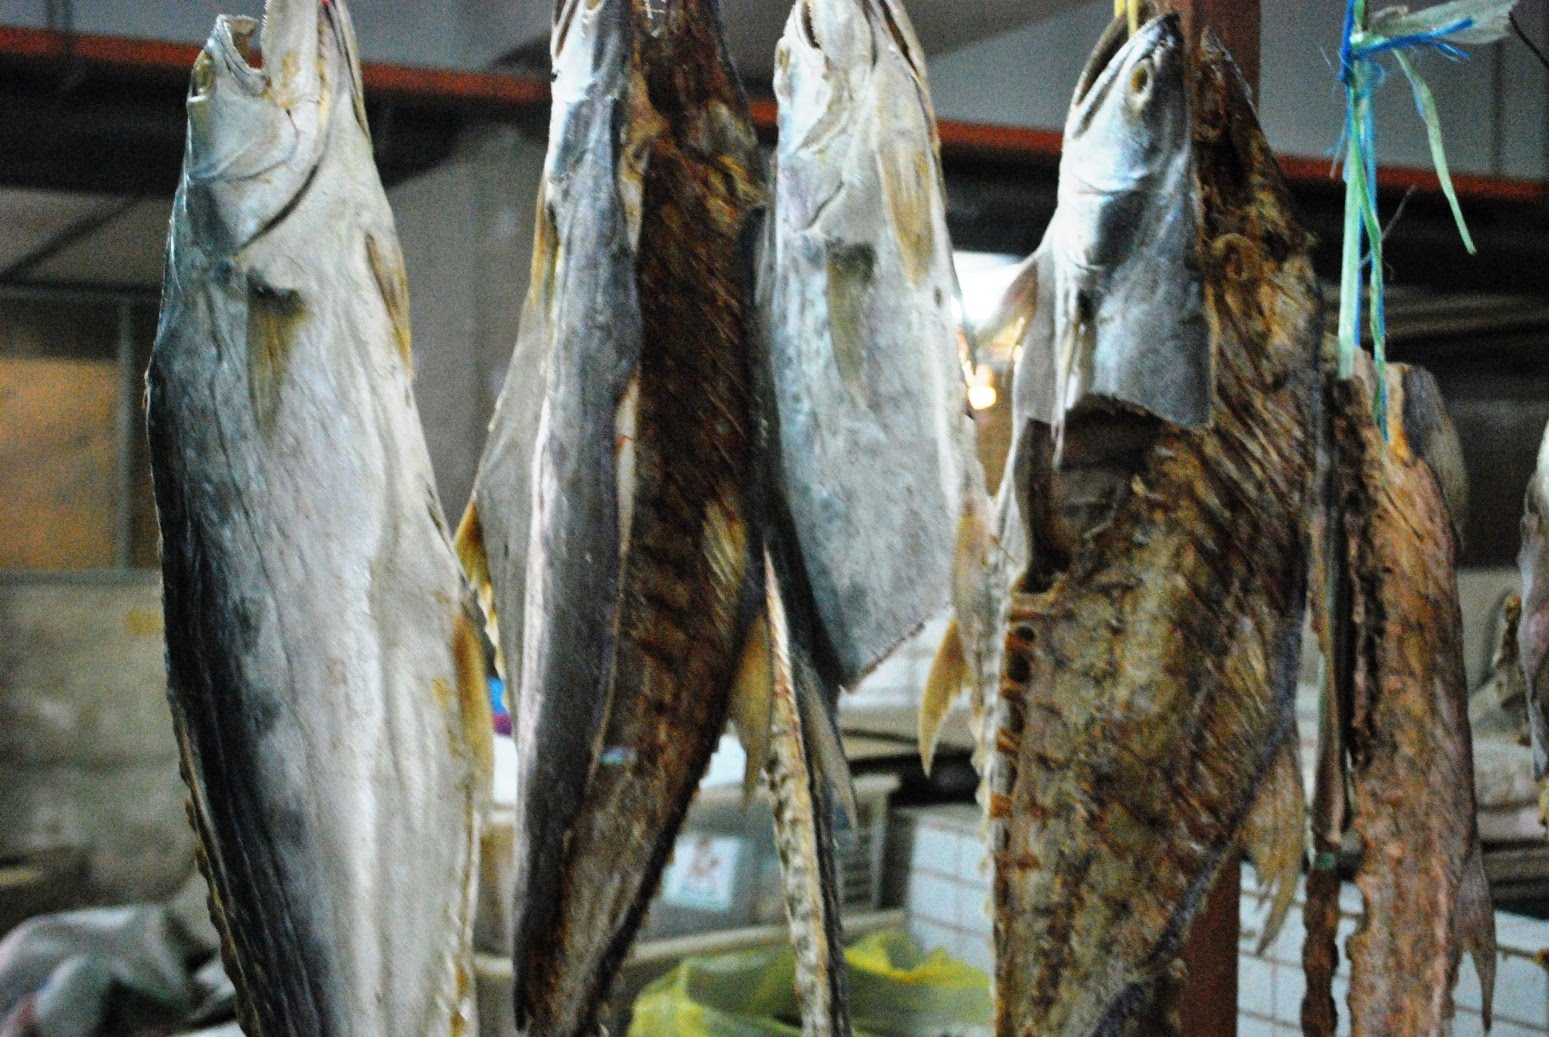 Ikan Masin Talang